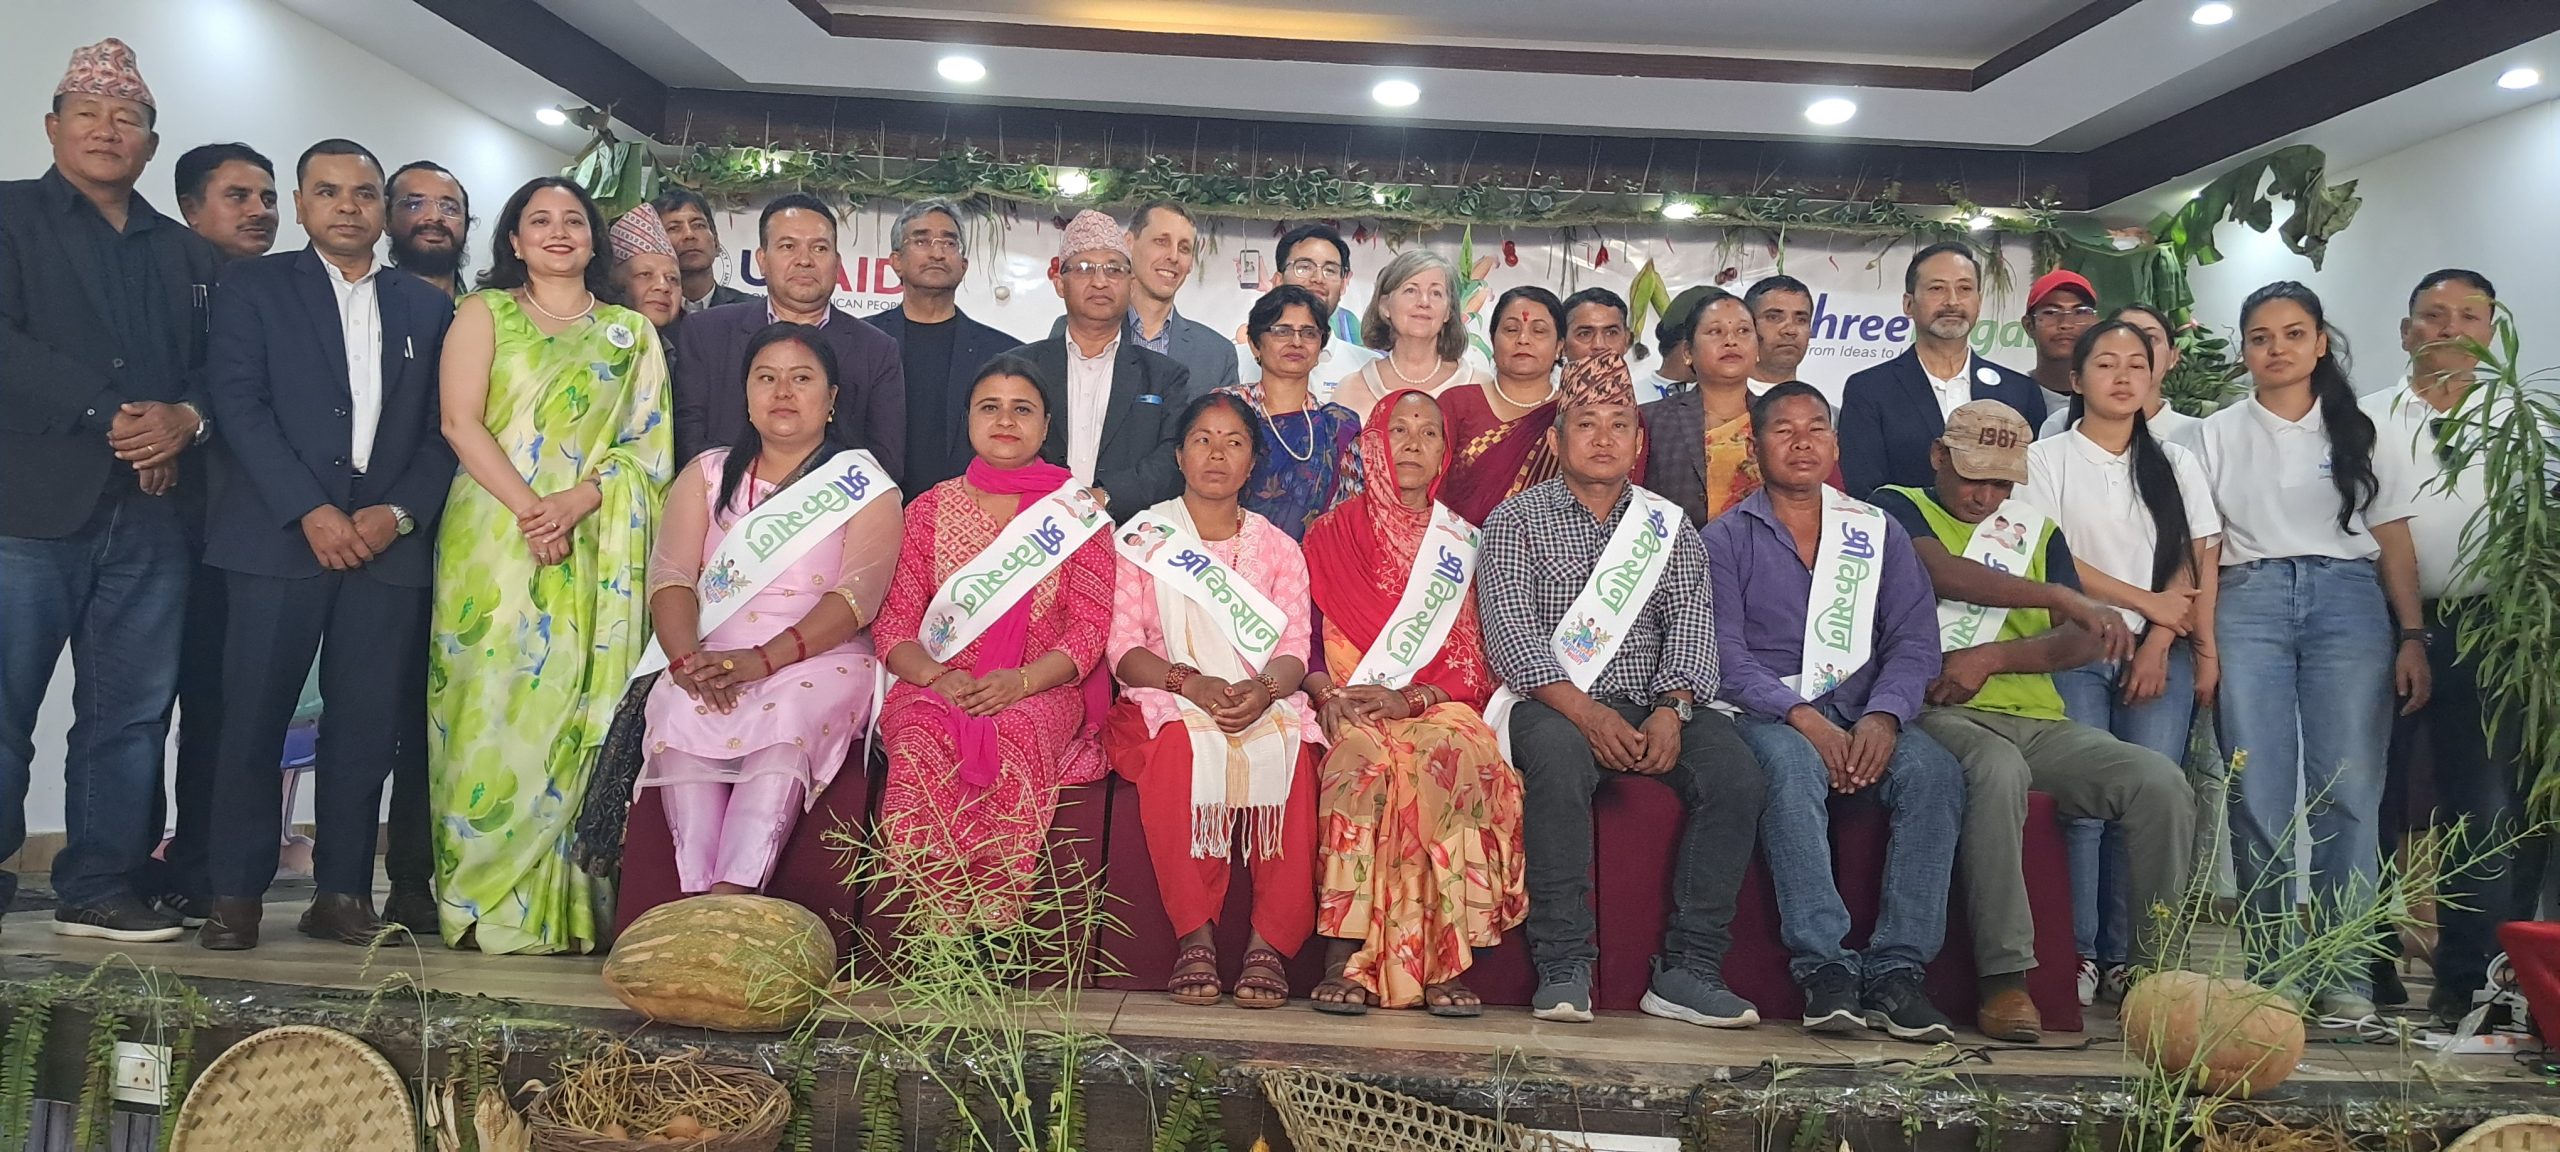 लुम्बिनीमा कुखुरा पालन परियोजनाको लागि साझेदारी कार्यक्रम शुरु